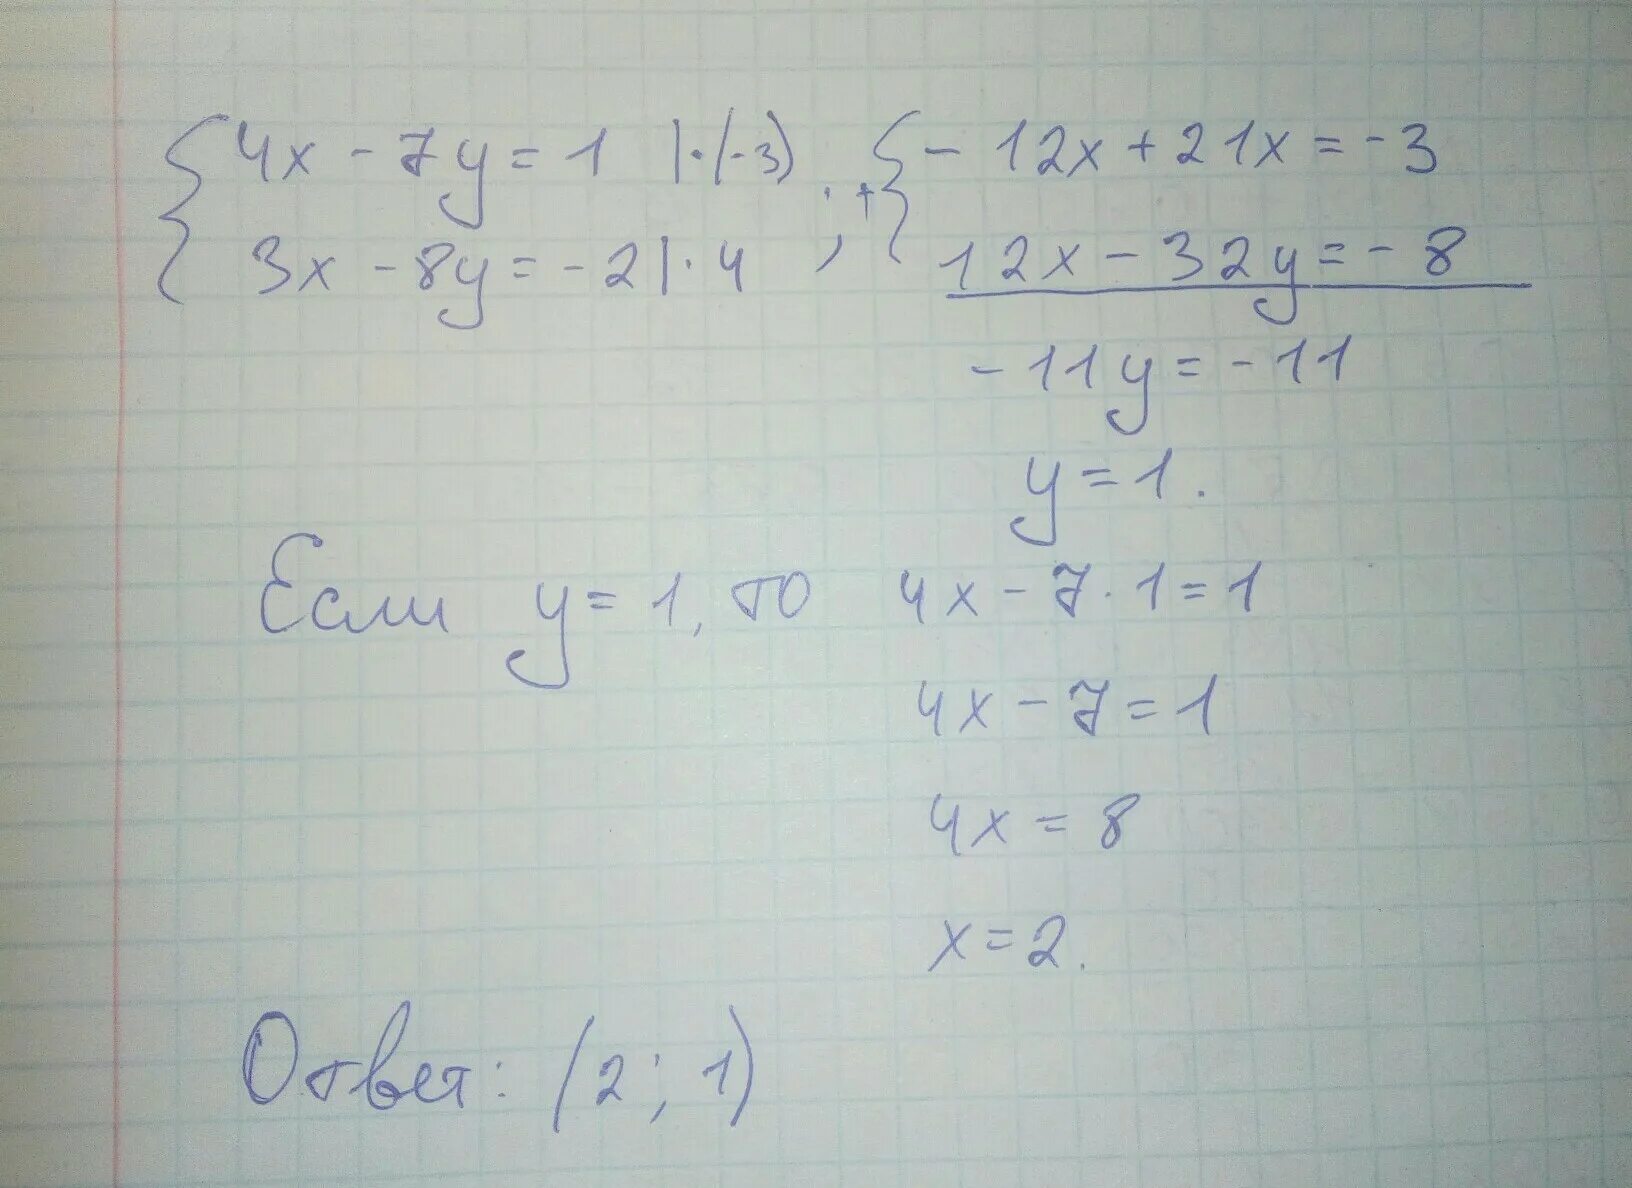 2x 3y 4 3x 4y 7. Решение методом сложения x-y=1 x^2+3y=7. Решите методом сложения систем уравнений x - y = 2x + y = 7. Решите методом сложения систему уравнений 4x-7y 1 3x-8y -2. Решите методом сложения систему уравнений 4x-7y 1.